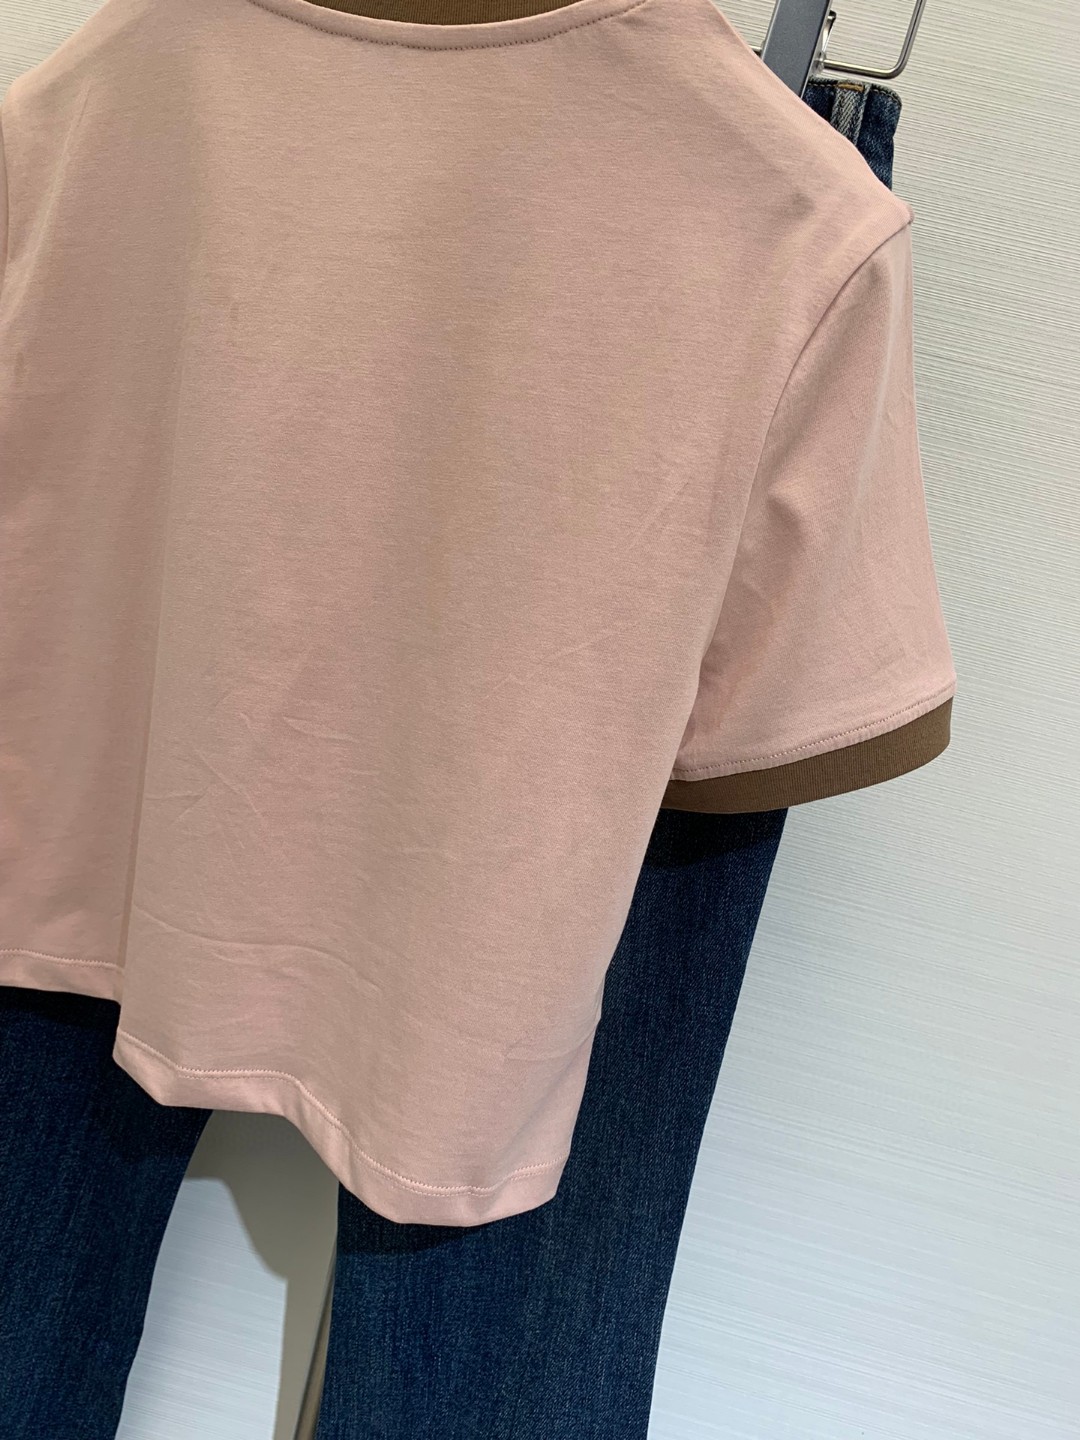 ミュウミュウトップス激安通販 半袖 Tシャツ 人気夏品 ロゴプリント ショット 少女感 ファッション レディース ピンク_9